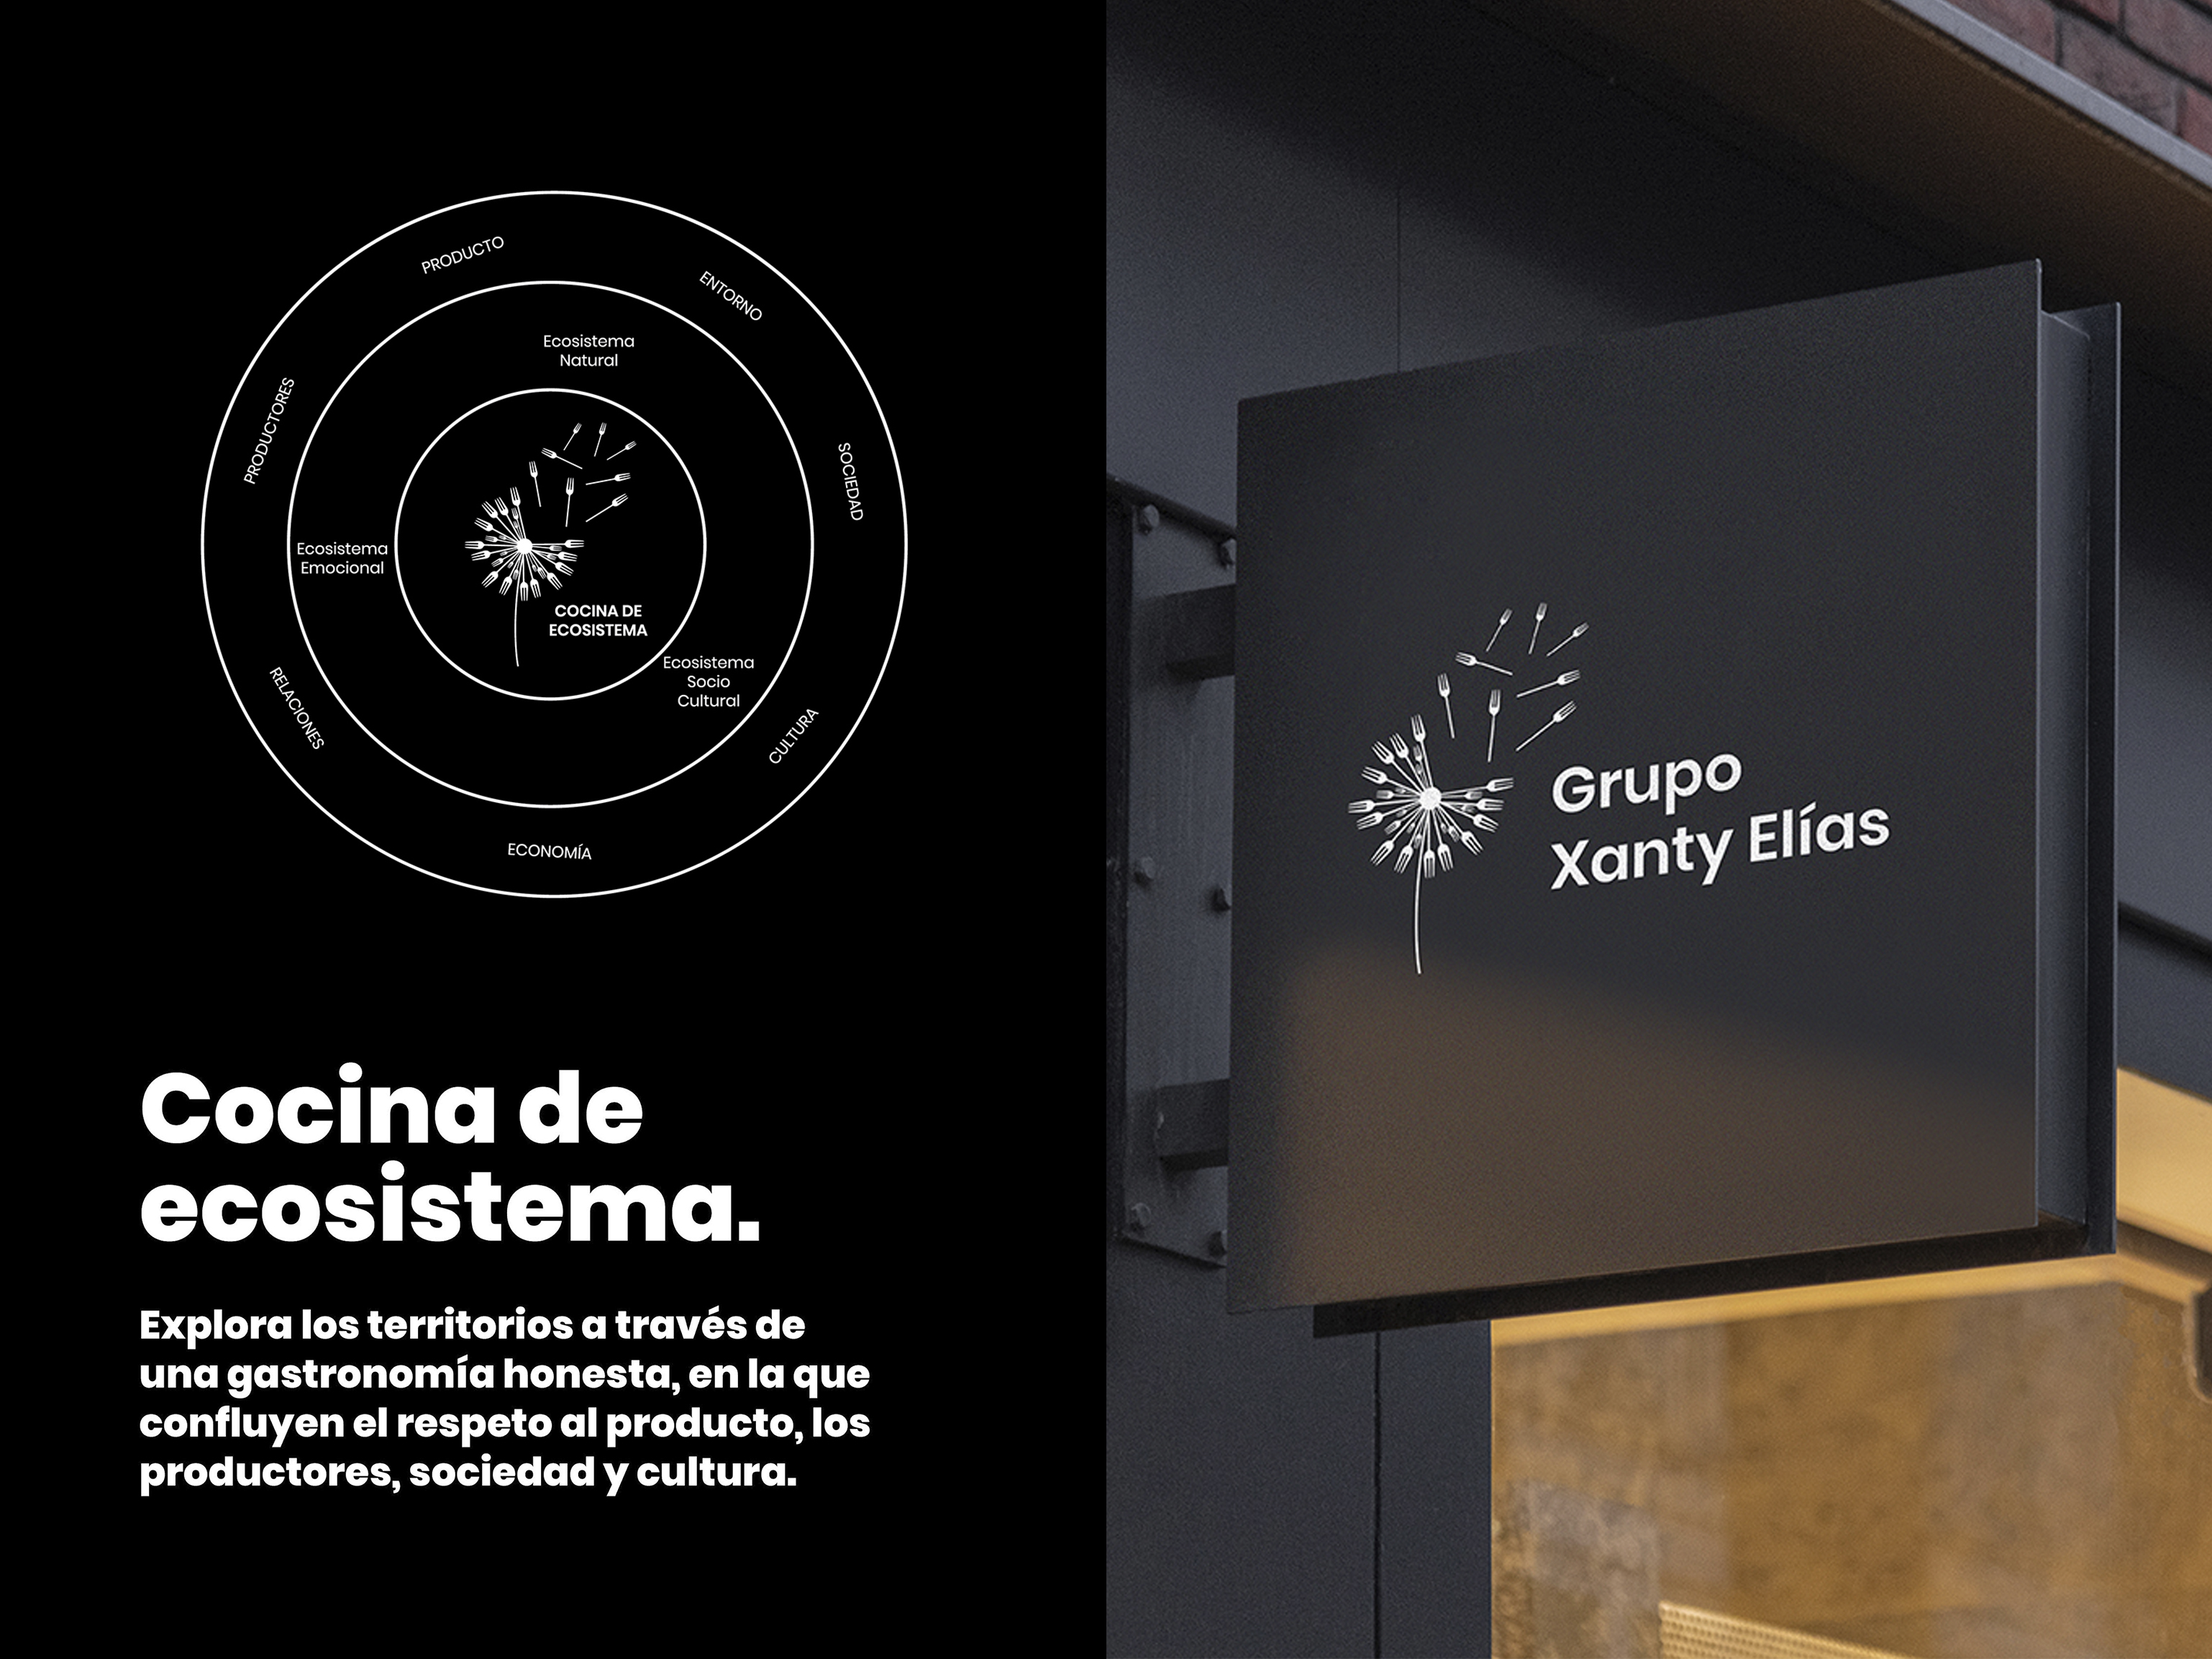 Grupo gastronómico Xanty Elías by Granada Barrero - Creative Work - $i